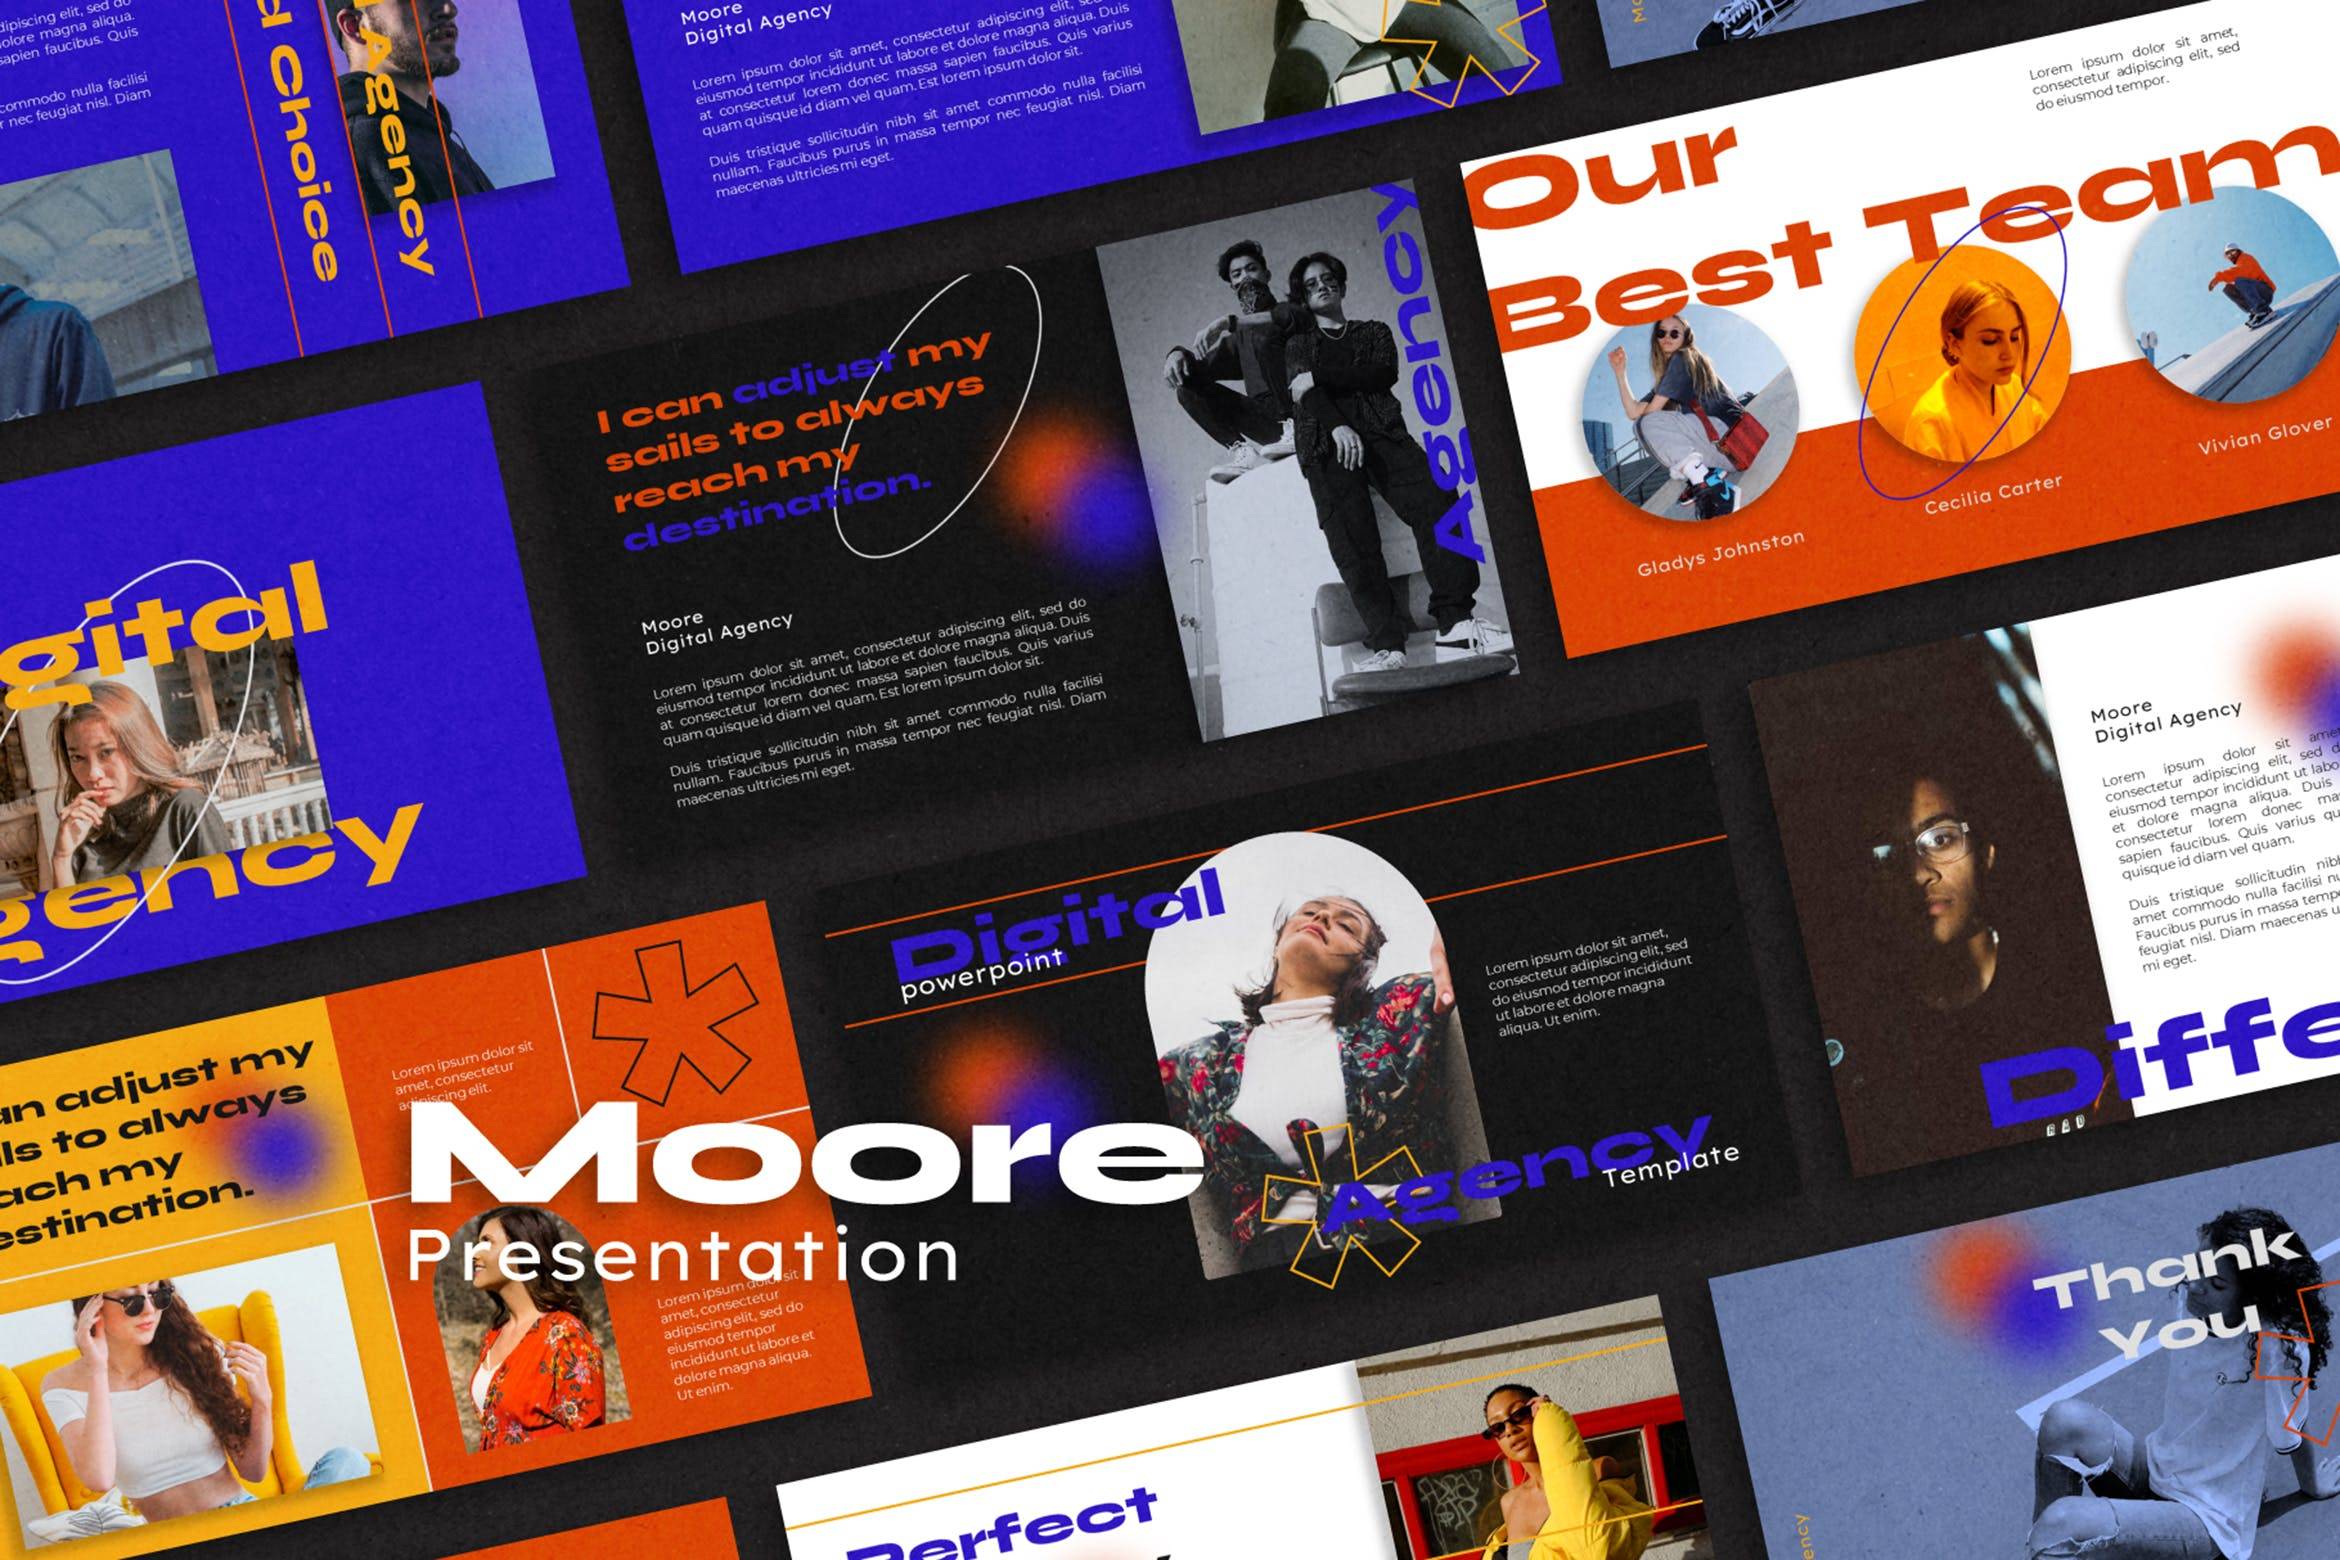 4398 时尚潮流嘻哈服饰服装产品推广发布展示PPT+Keynote模板 Moore Powerpoint Template@GOOODME.COM